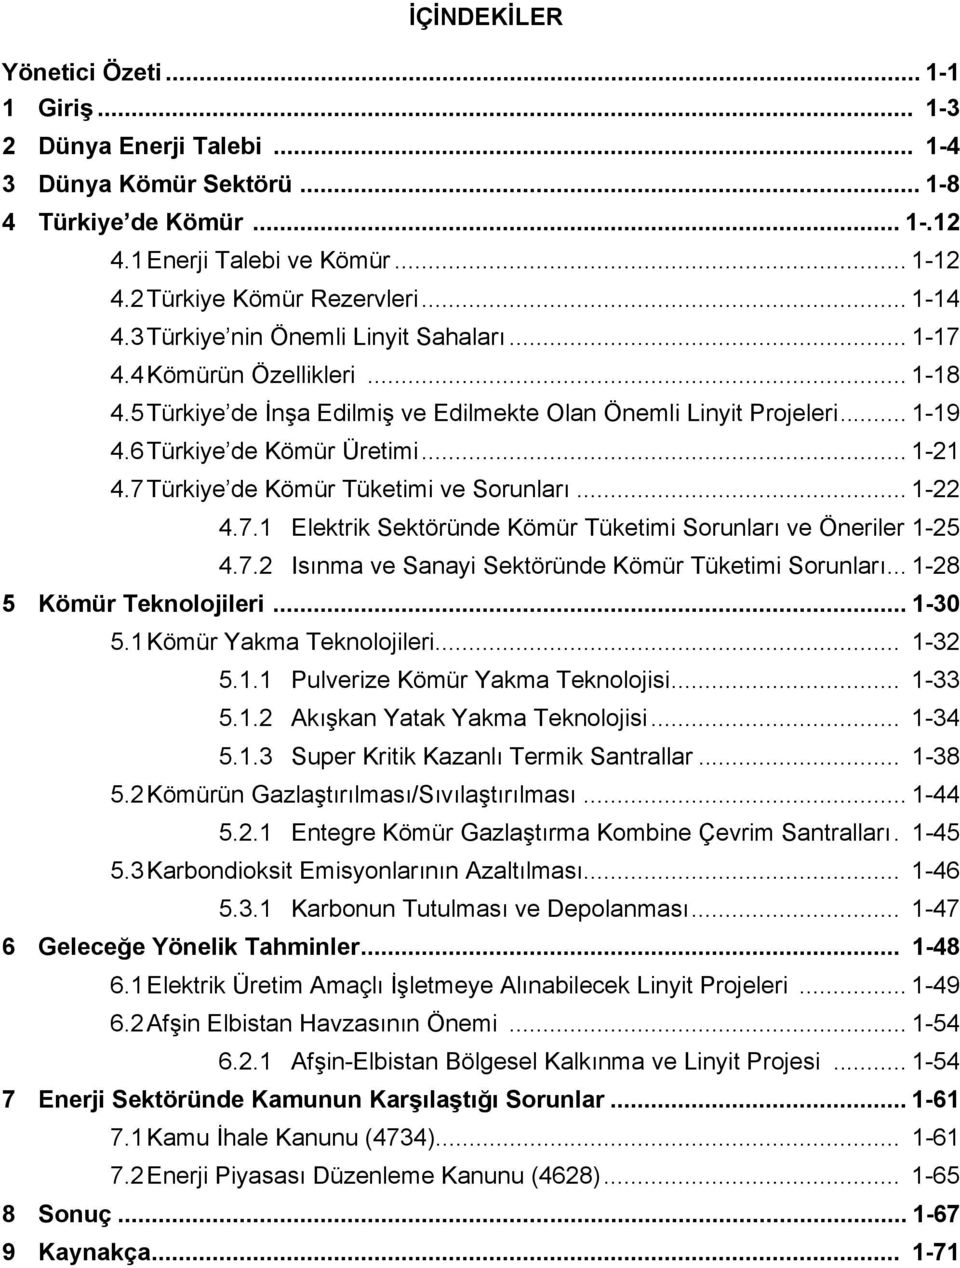 .. 1-21 4.7 Türkiye de Kömür Tüketimi ve Sorunları... 1-22 4.7.1 Elektrik Sektöründe Kömür Tüketimi Sorunları ve Öneriler 1-25 4.7.2 Isınma ve Sanayi Sektöründe Kömür Tüketimi Sorunları.